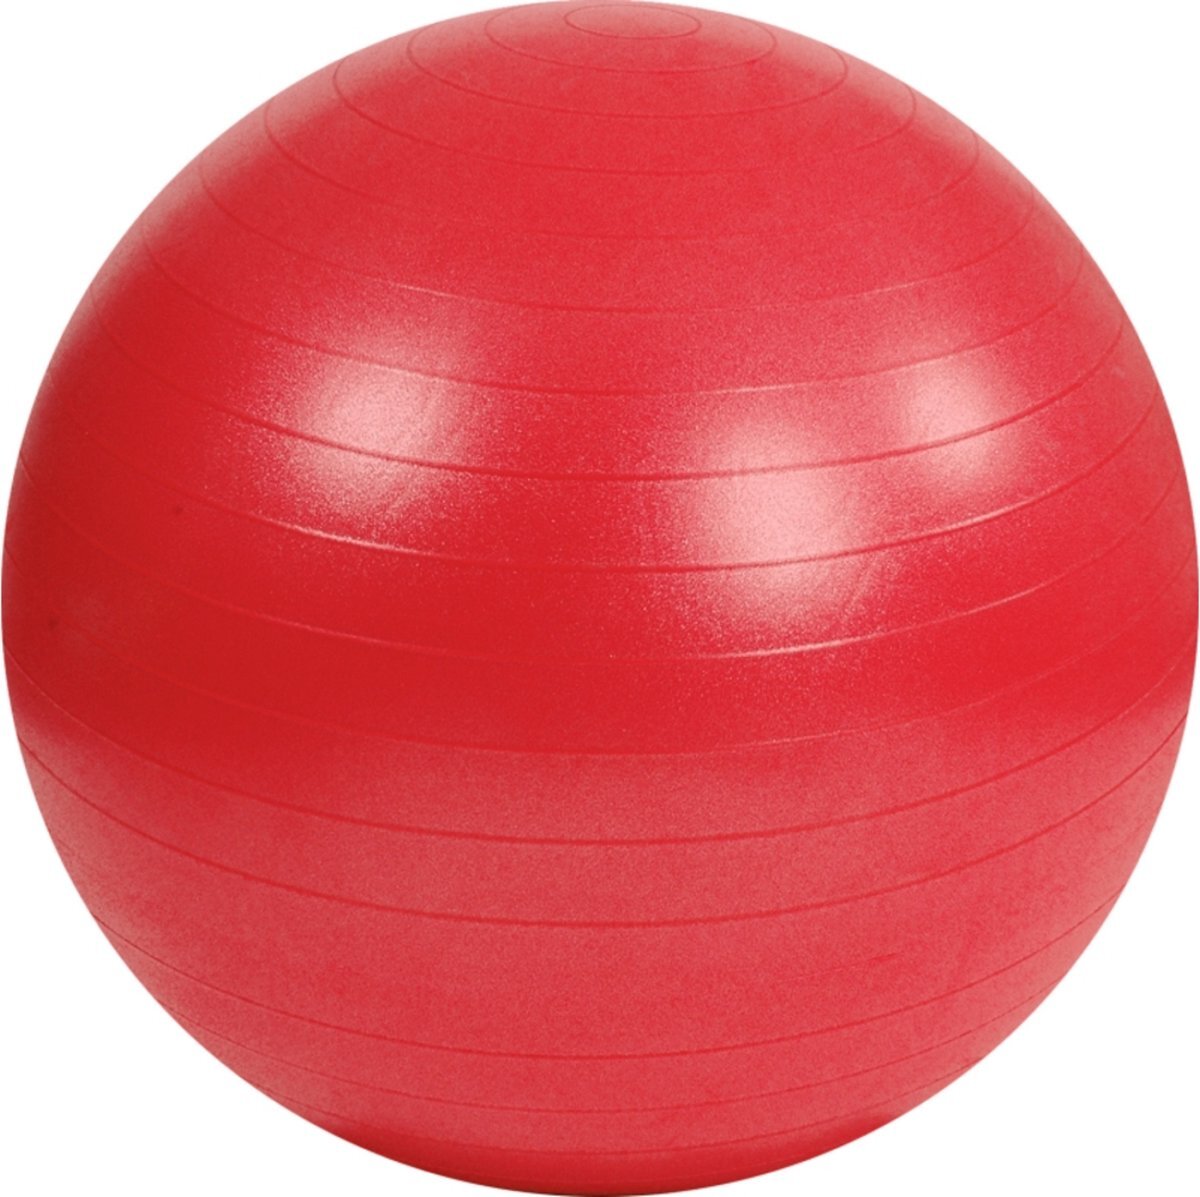 Padisport Yoga bal - 75 cm - rood - fitnessbal - groot - yogabal - pilates